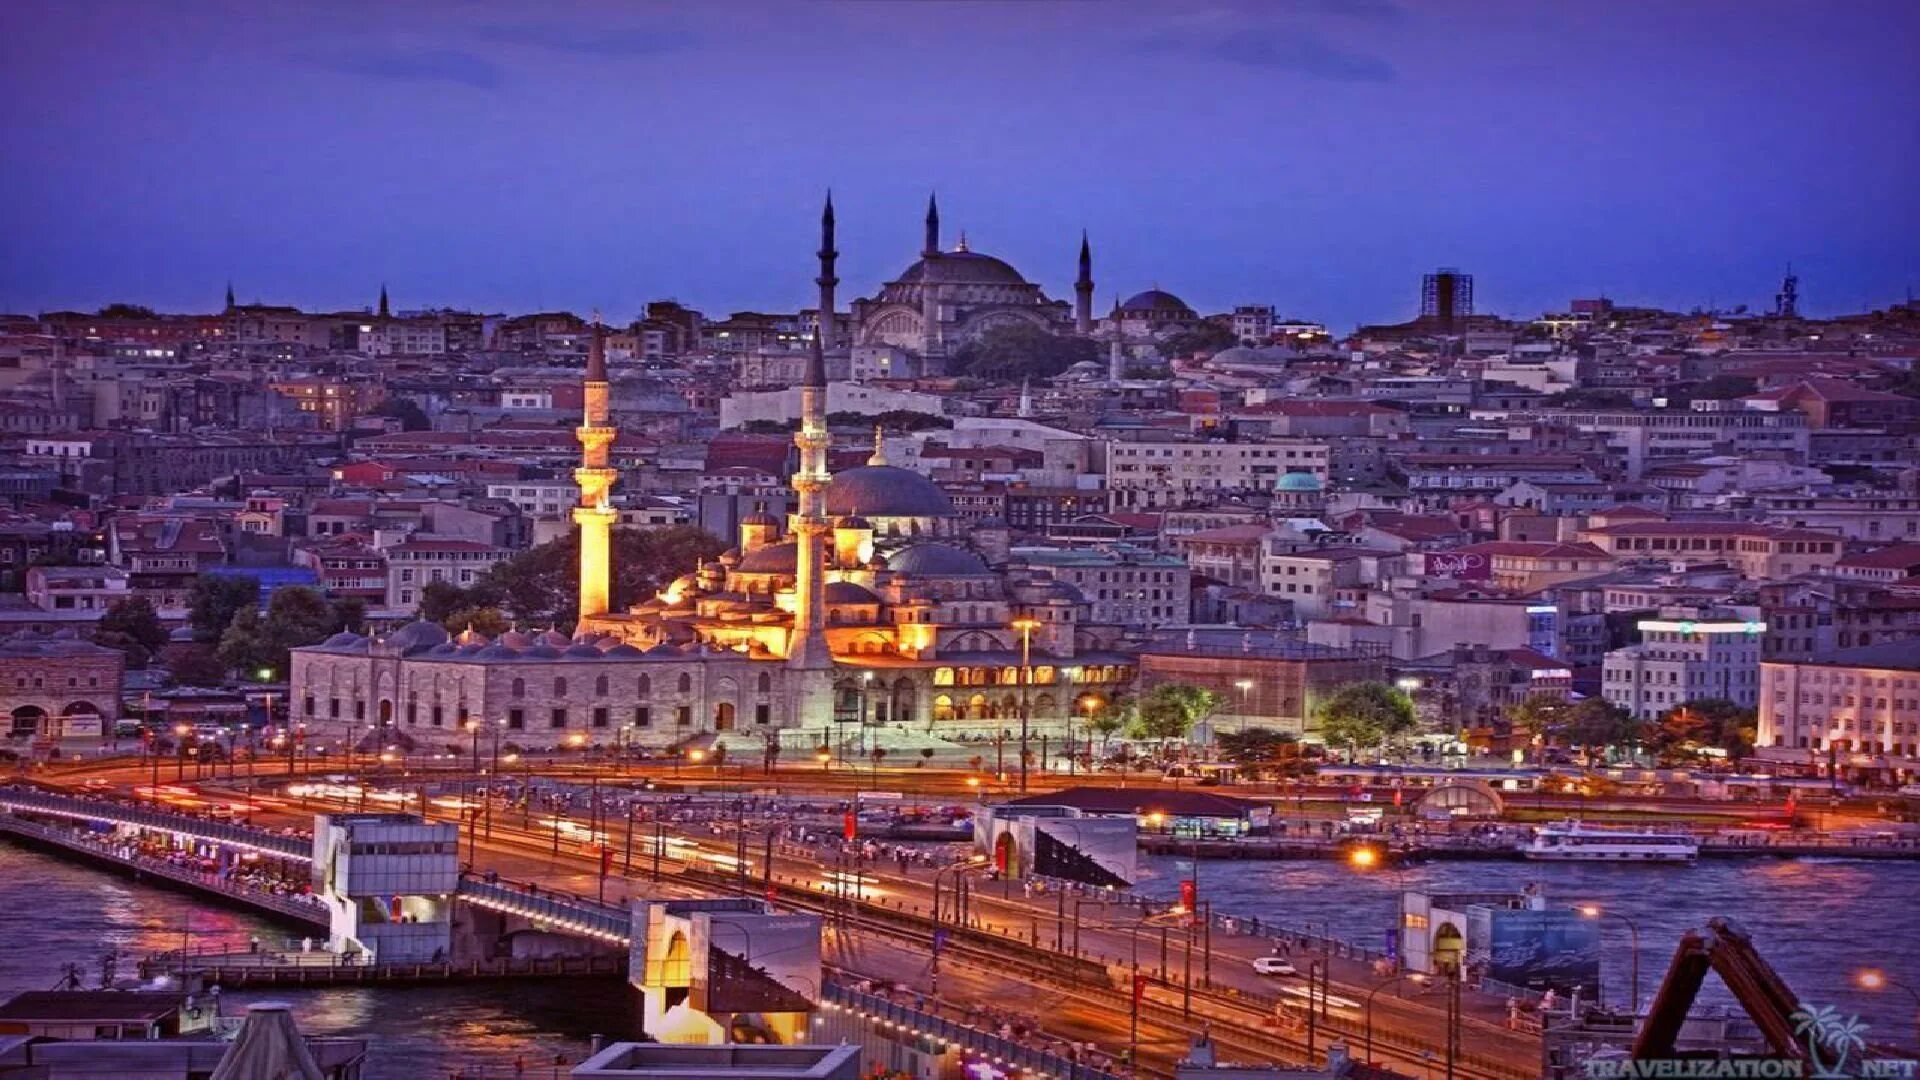 Best turkey. Турция Истанбул. Мечеть Сулеймание в Стамбуле. Стамбул набережная Босфора. Турция Истанбул Анкара.